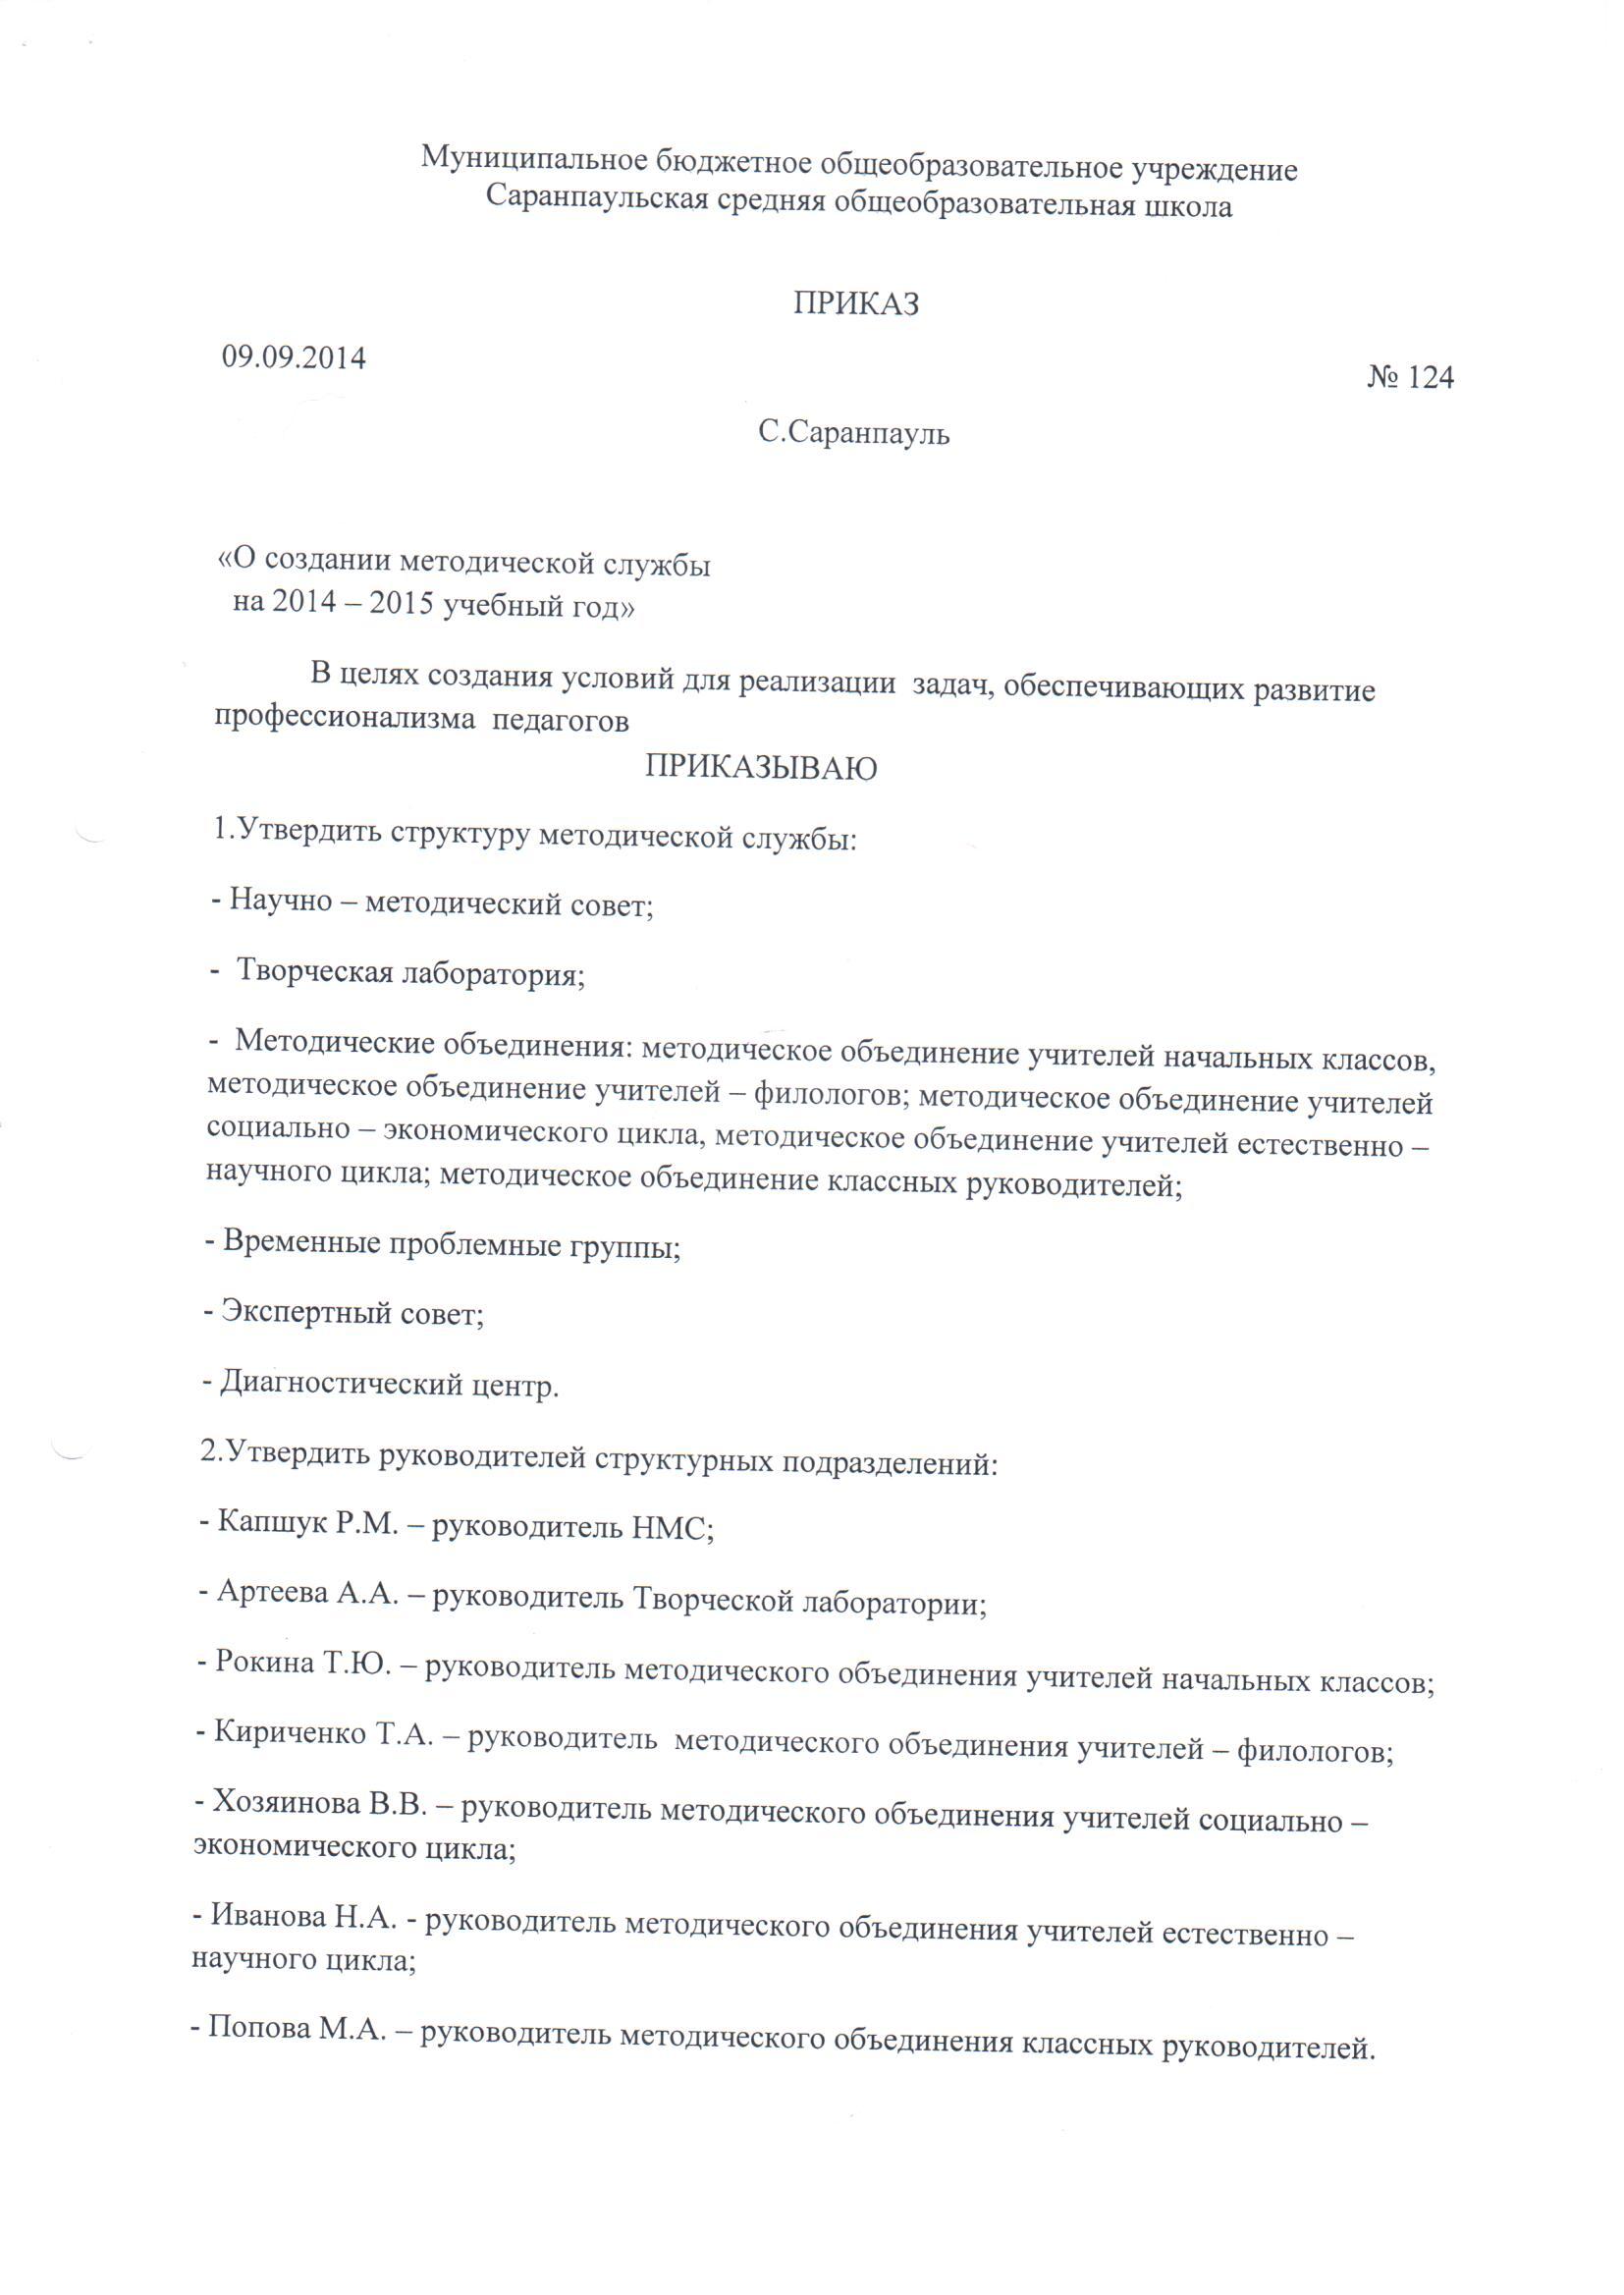 Приказ о создании МС на 2014-15 (1).